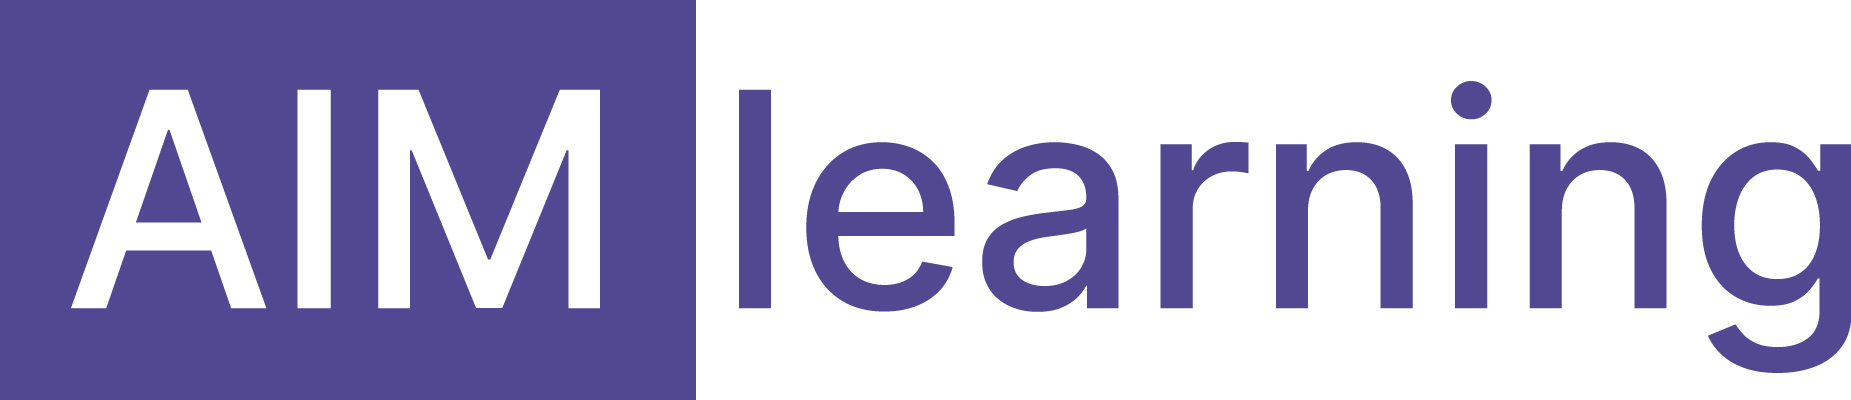 AIMlearning_logo.jpg